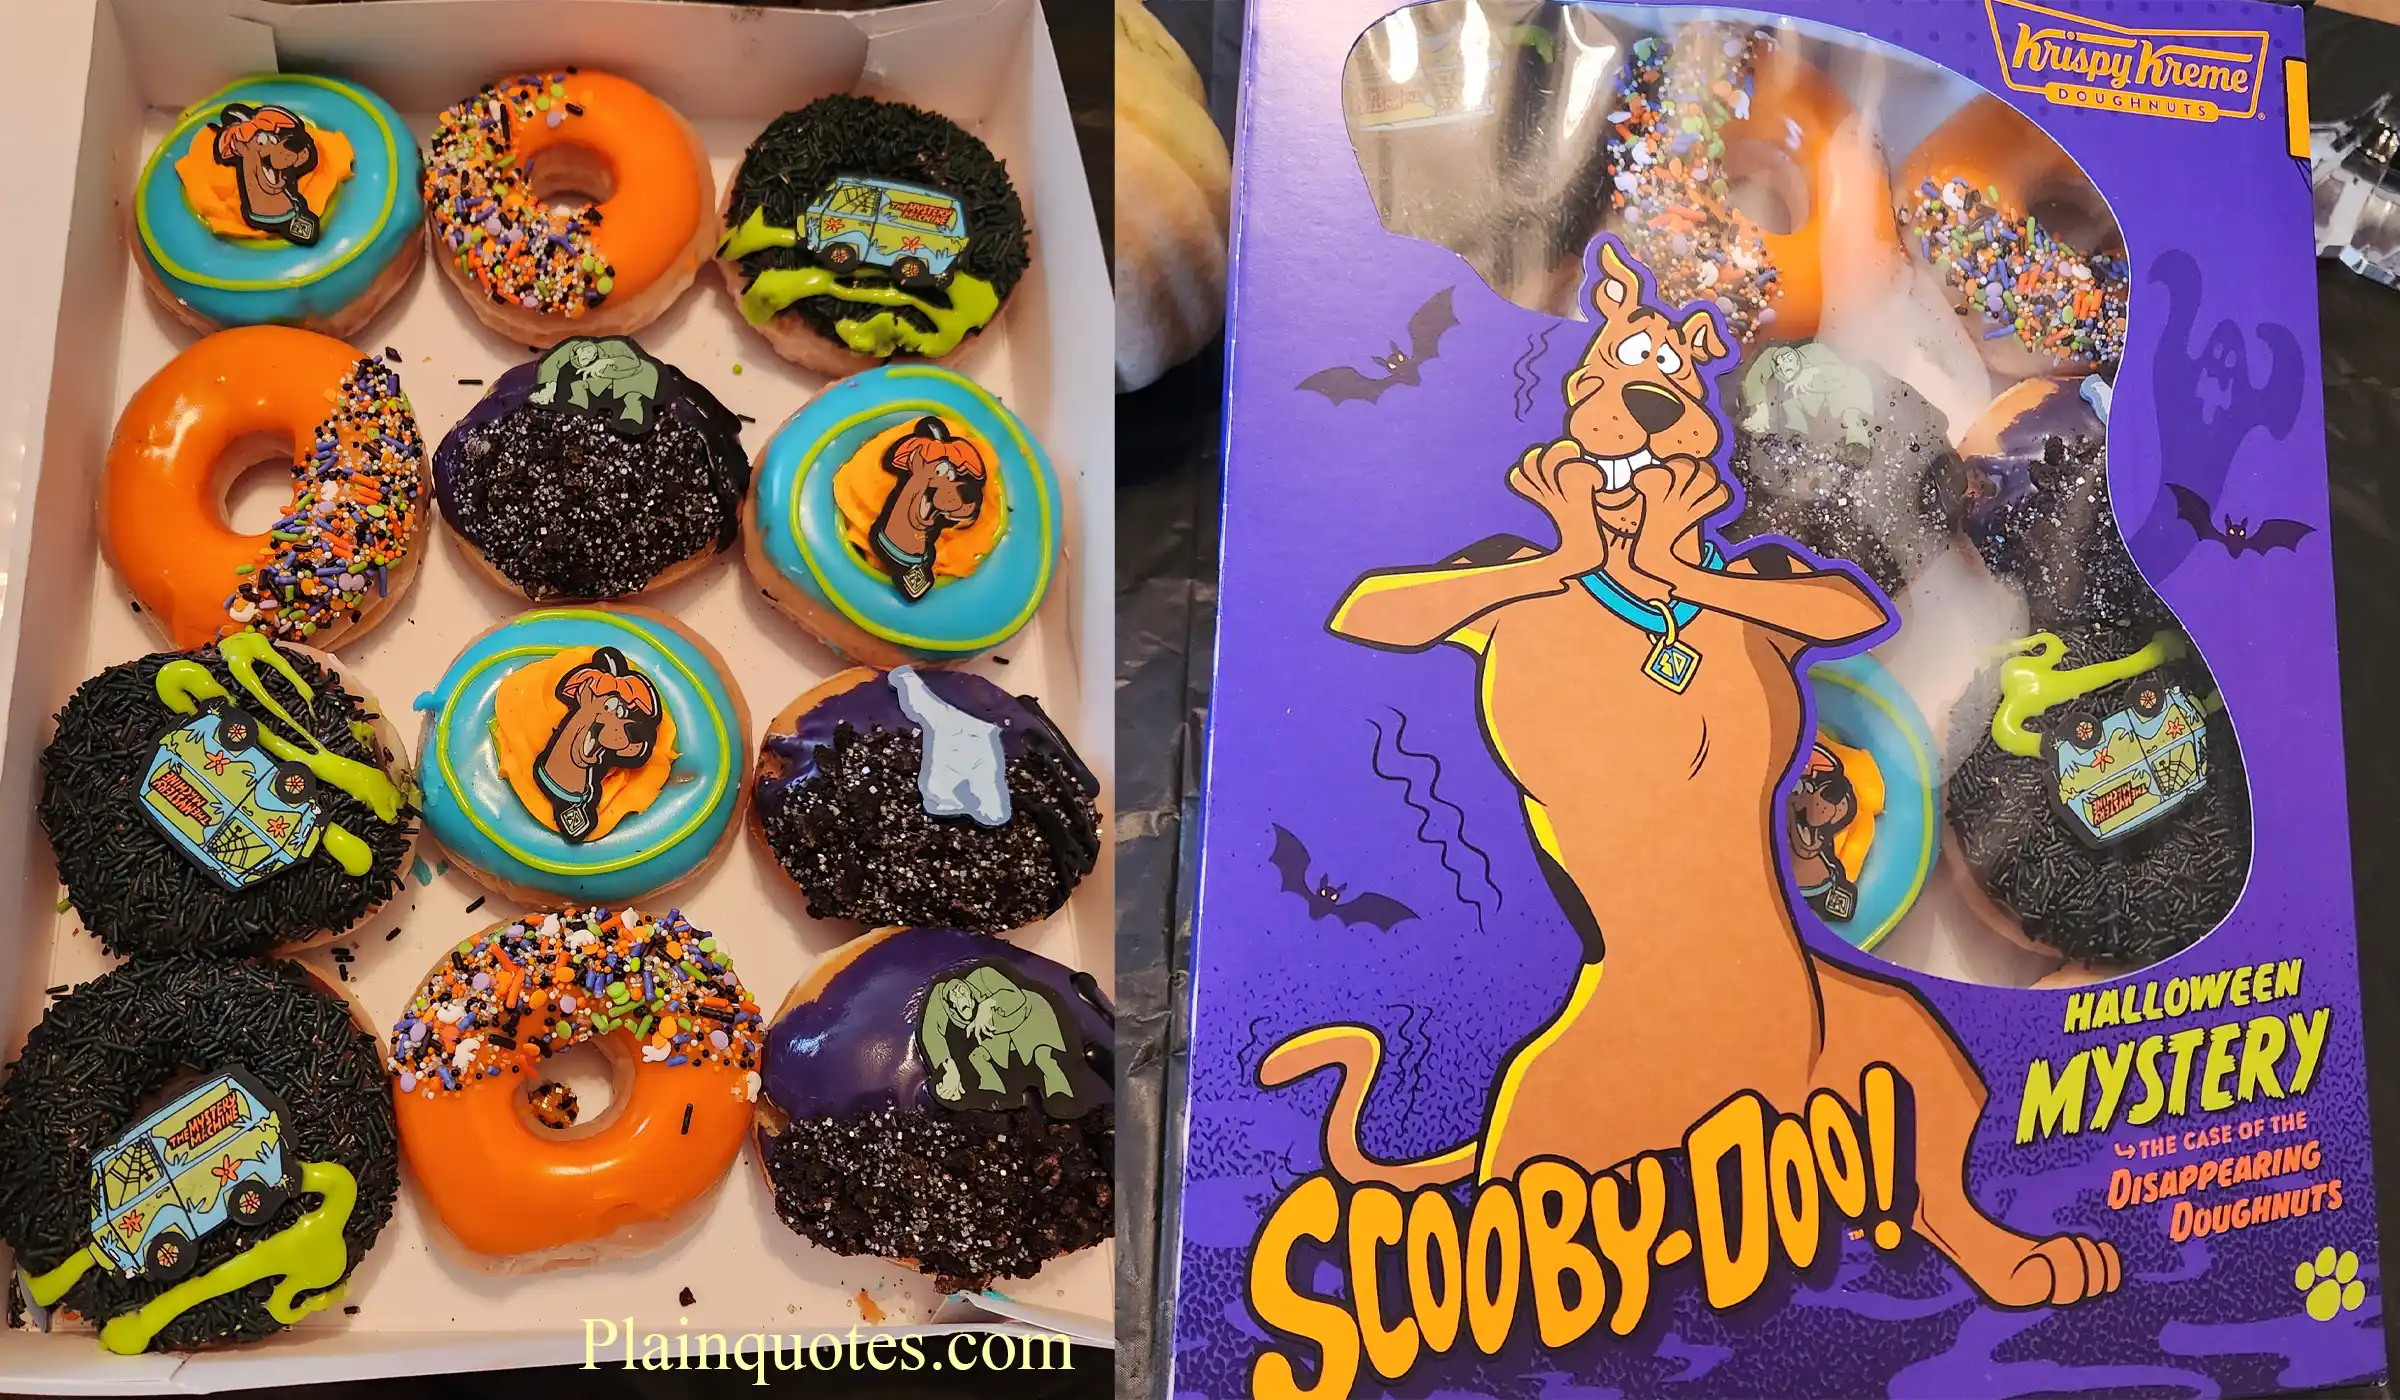 Scooby-Doo! Halloween Doughnuts